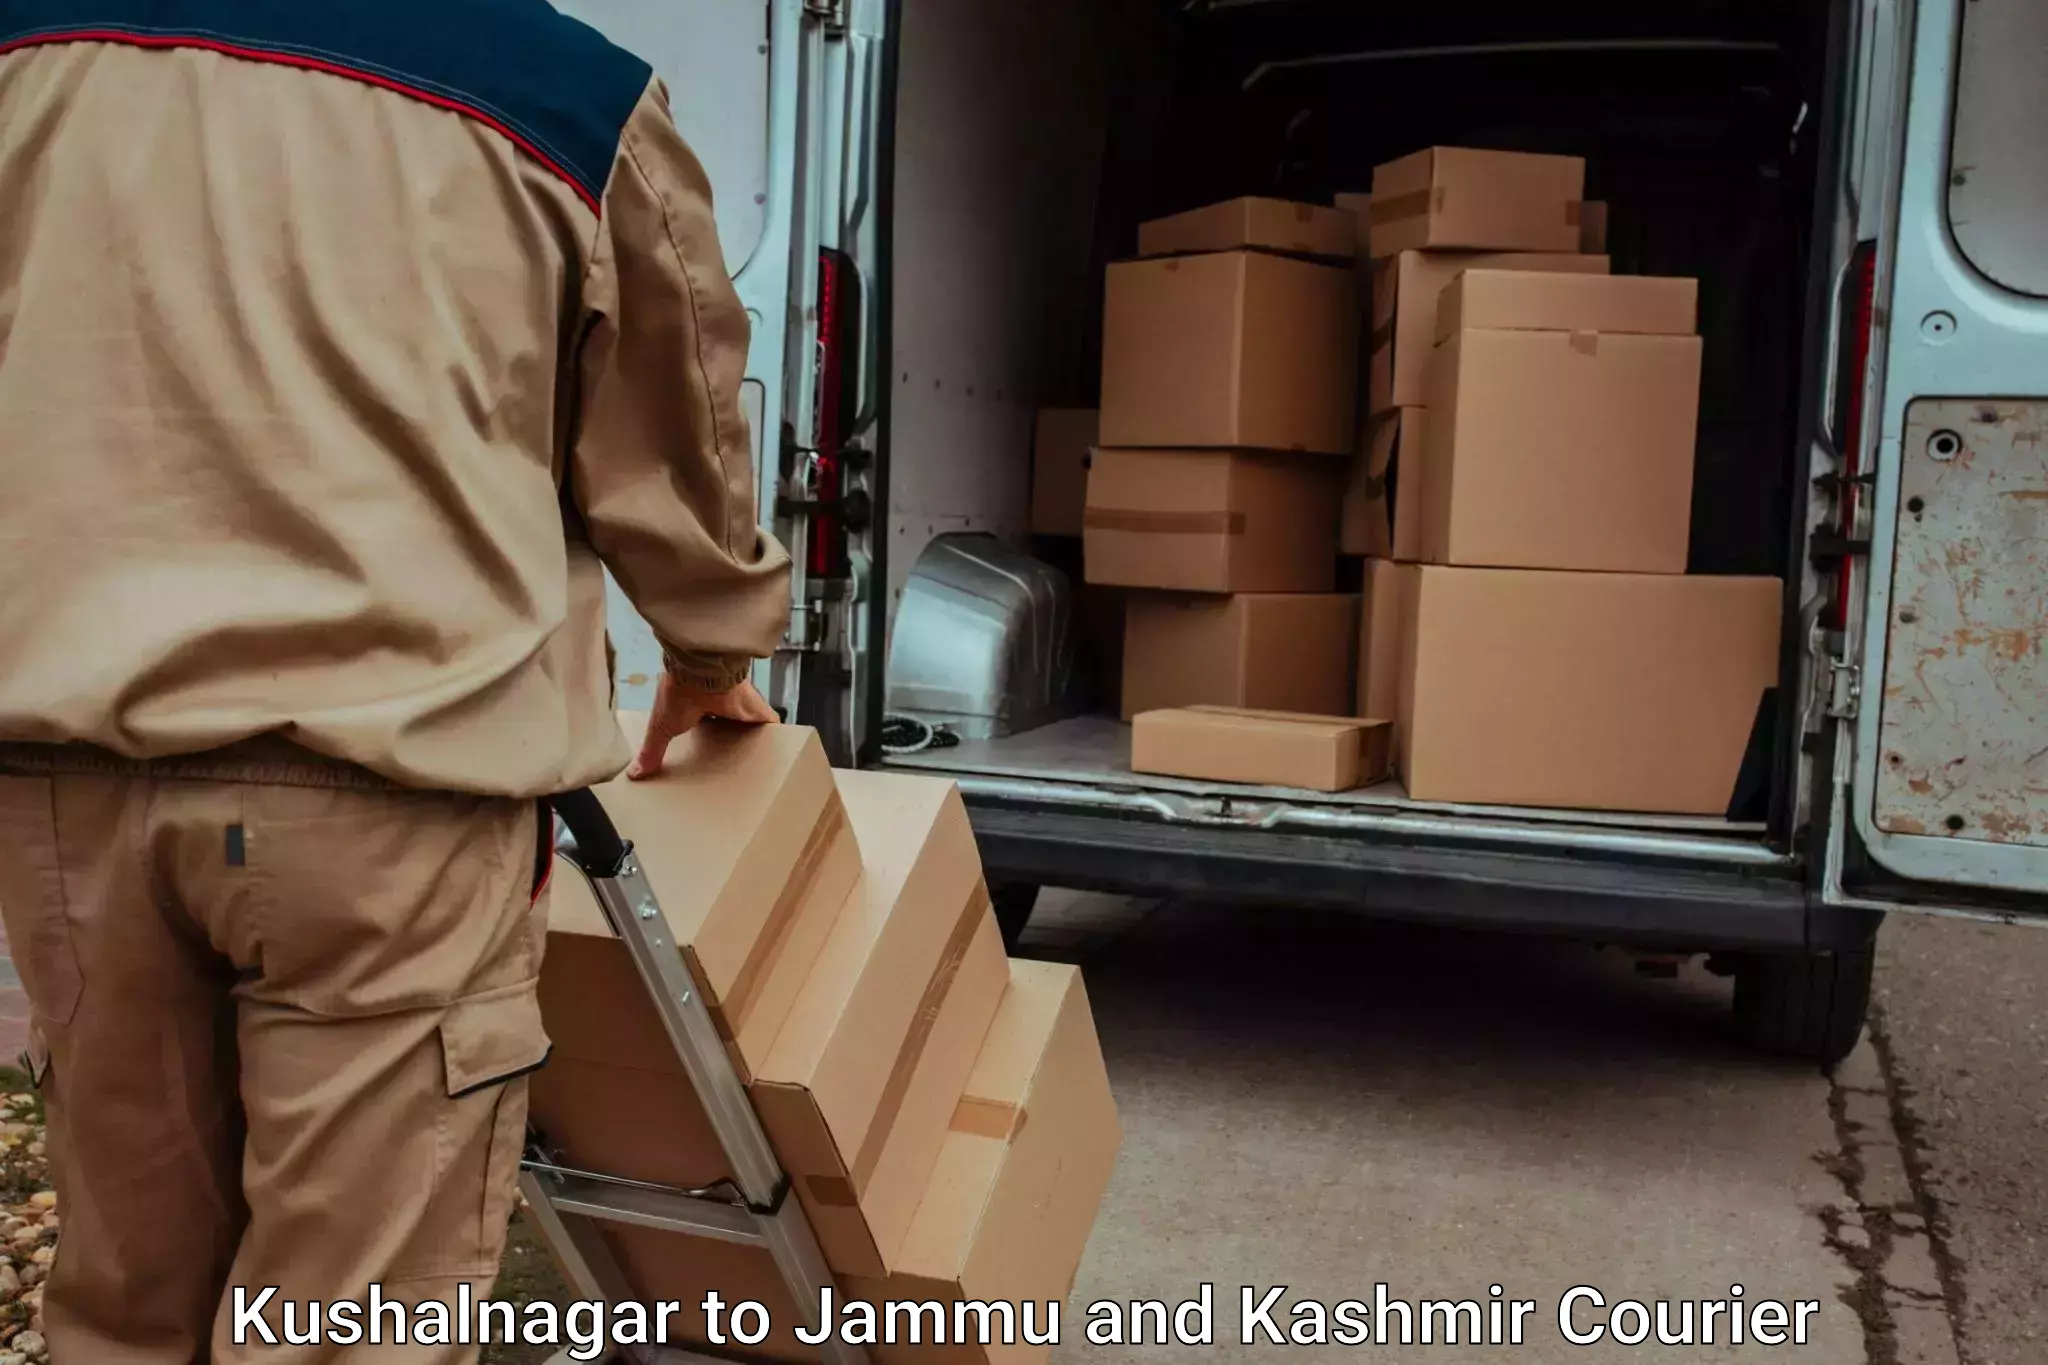 Luggage delivery network Kushalnagar to Kupwara